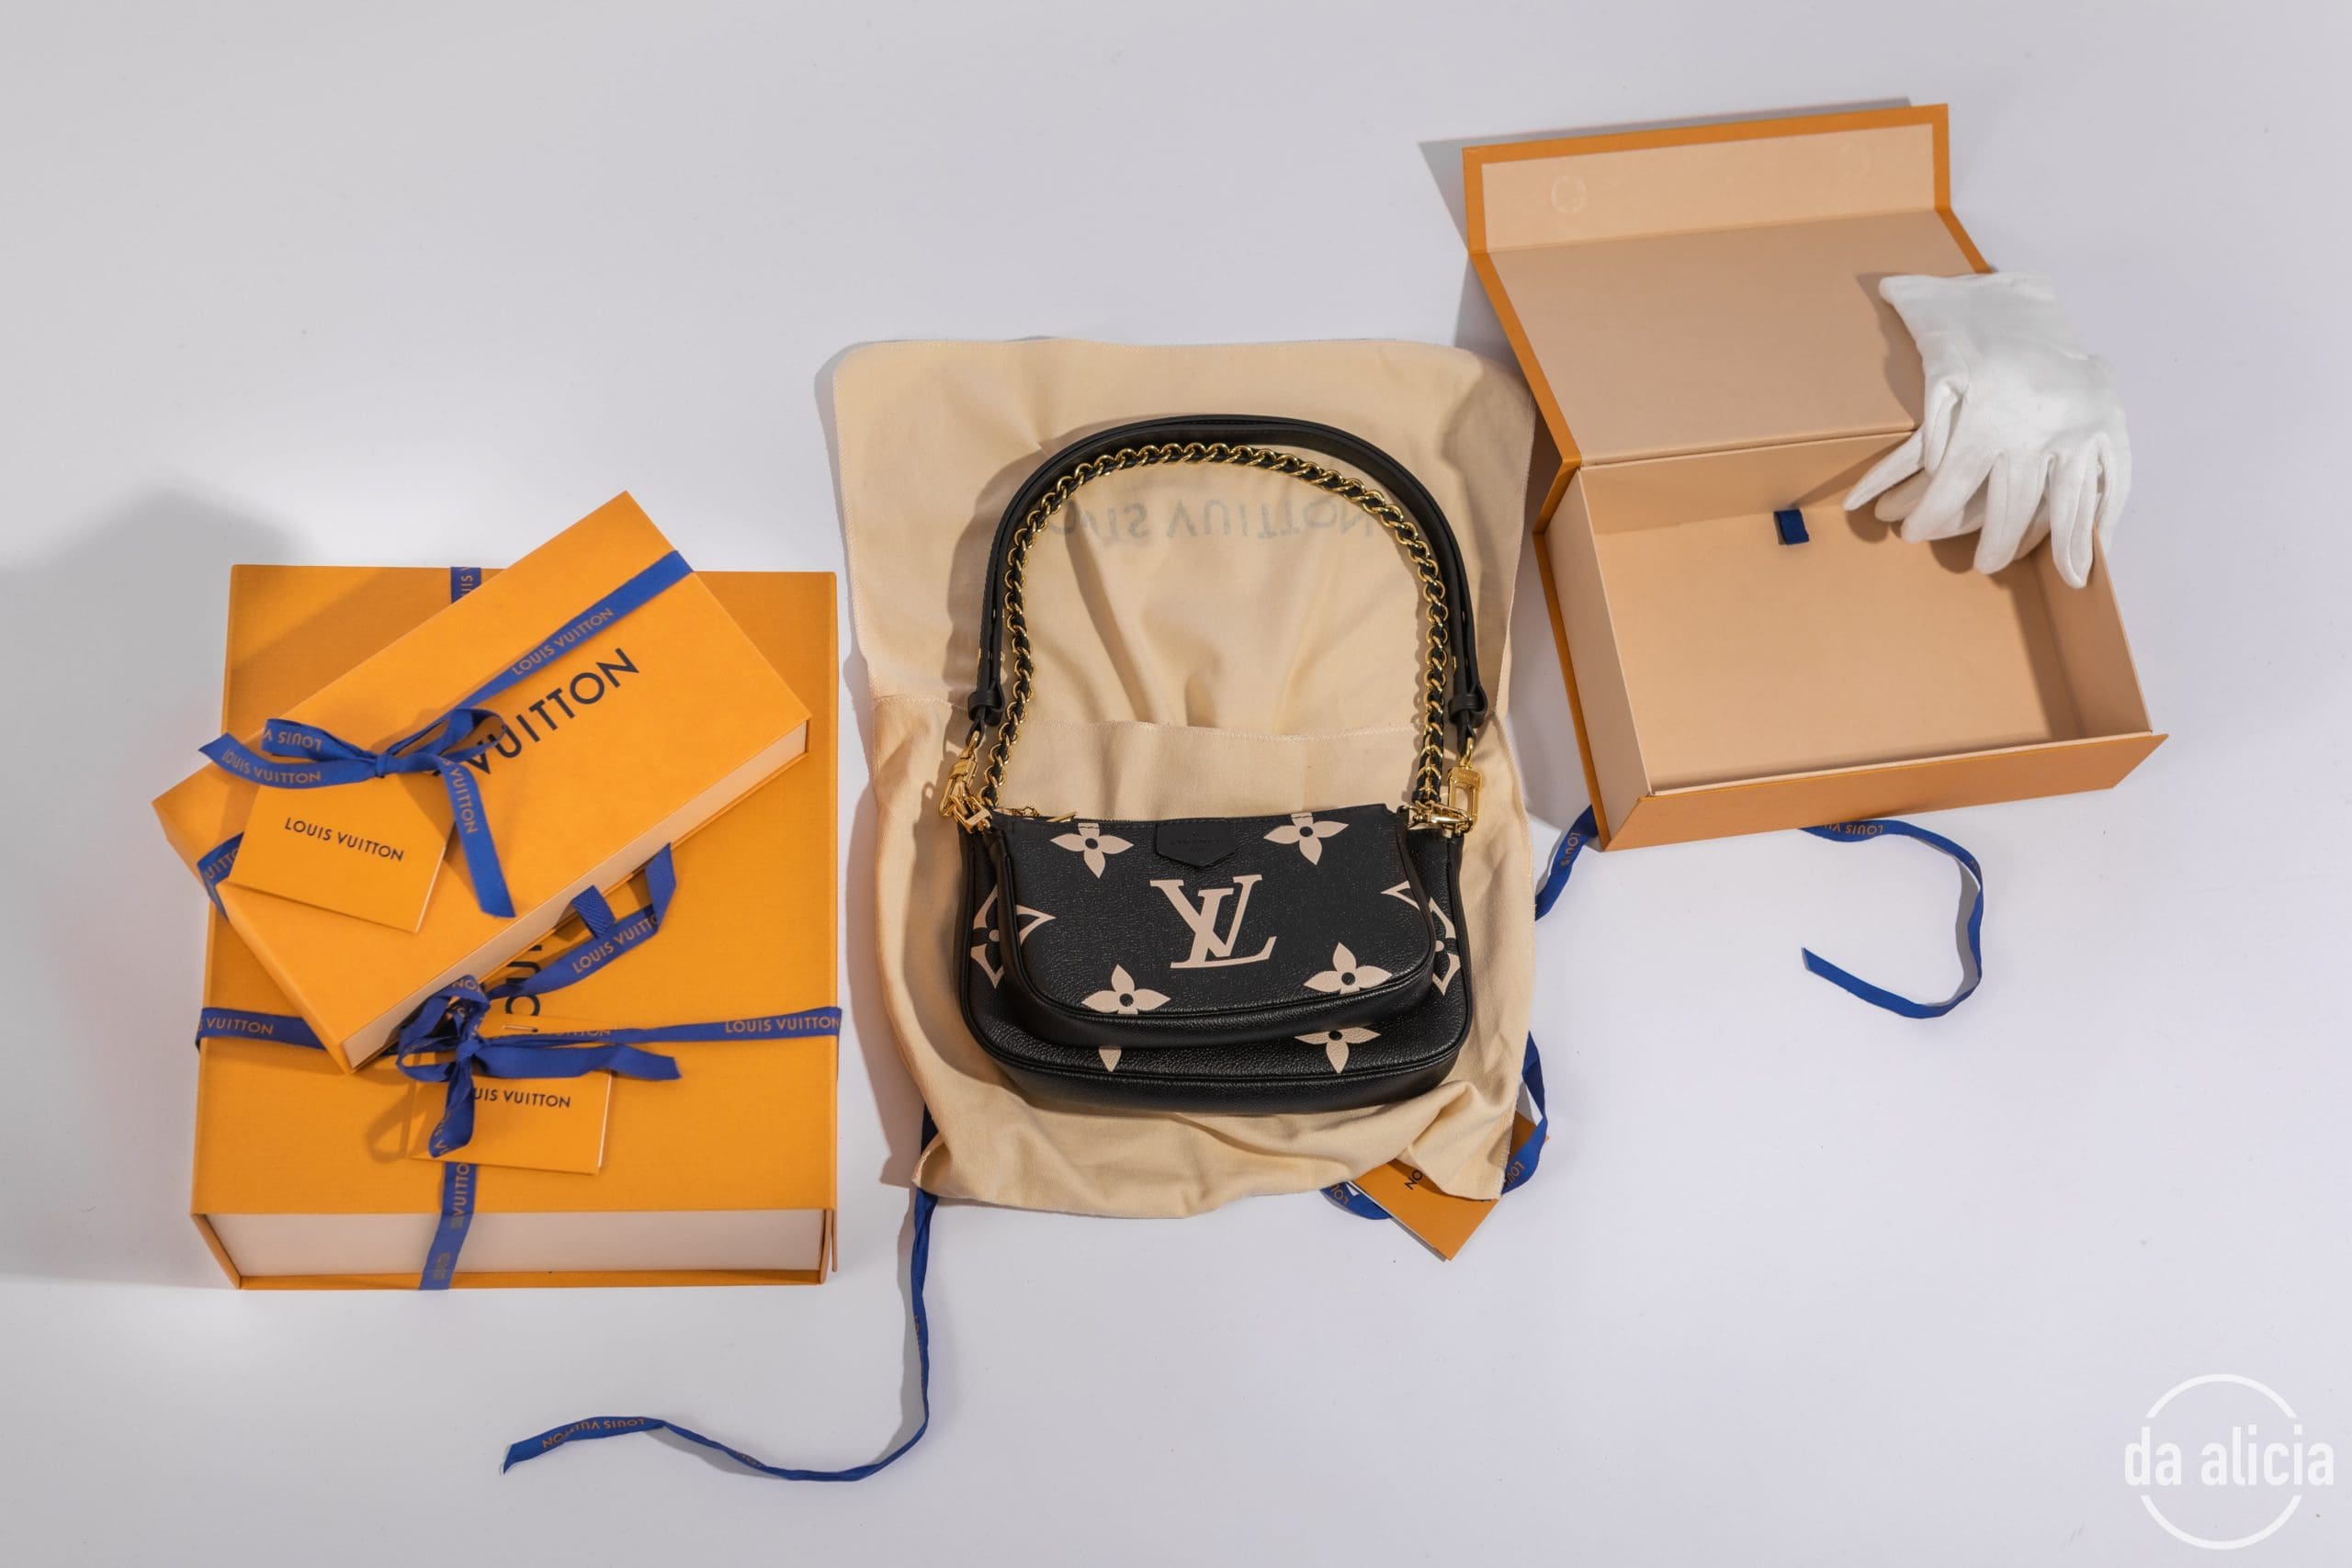 Eine neue Louis Vuitton gerade ausgepackt. © da alicia